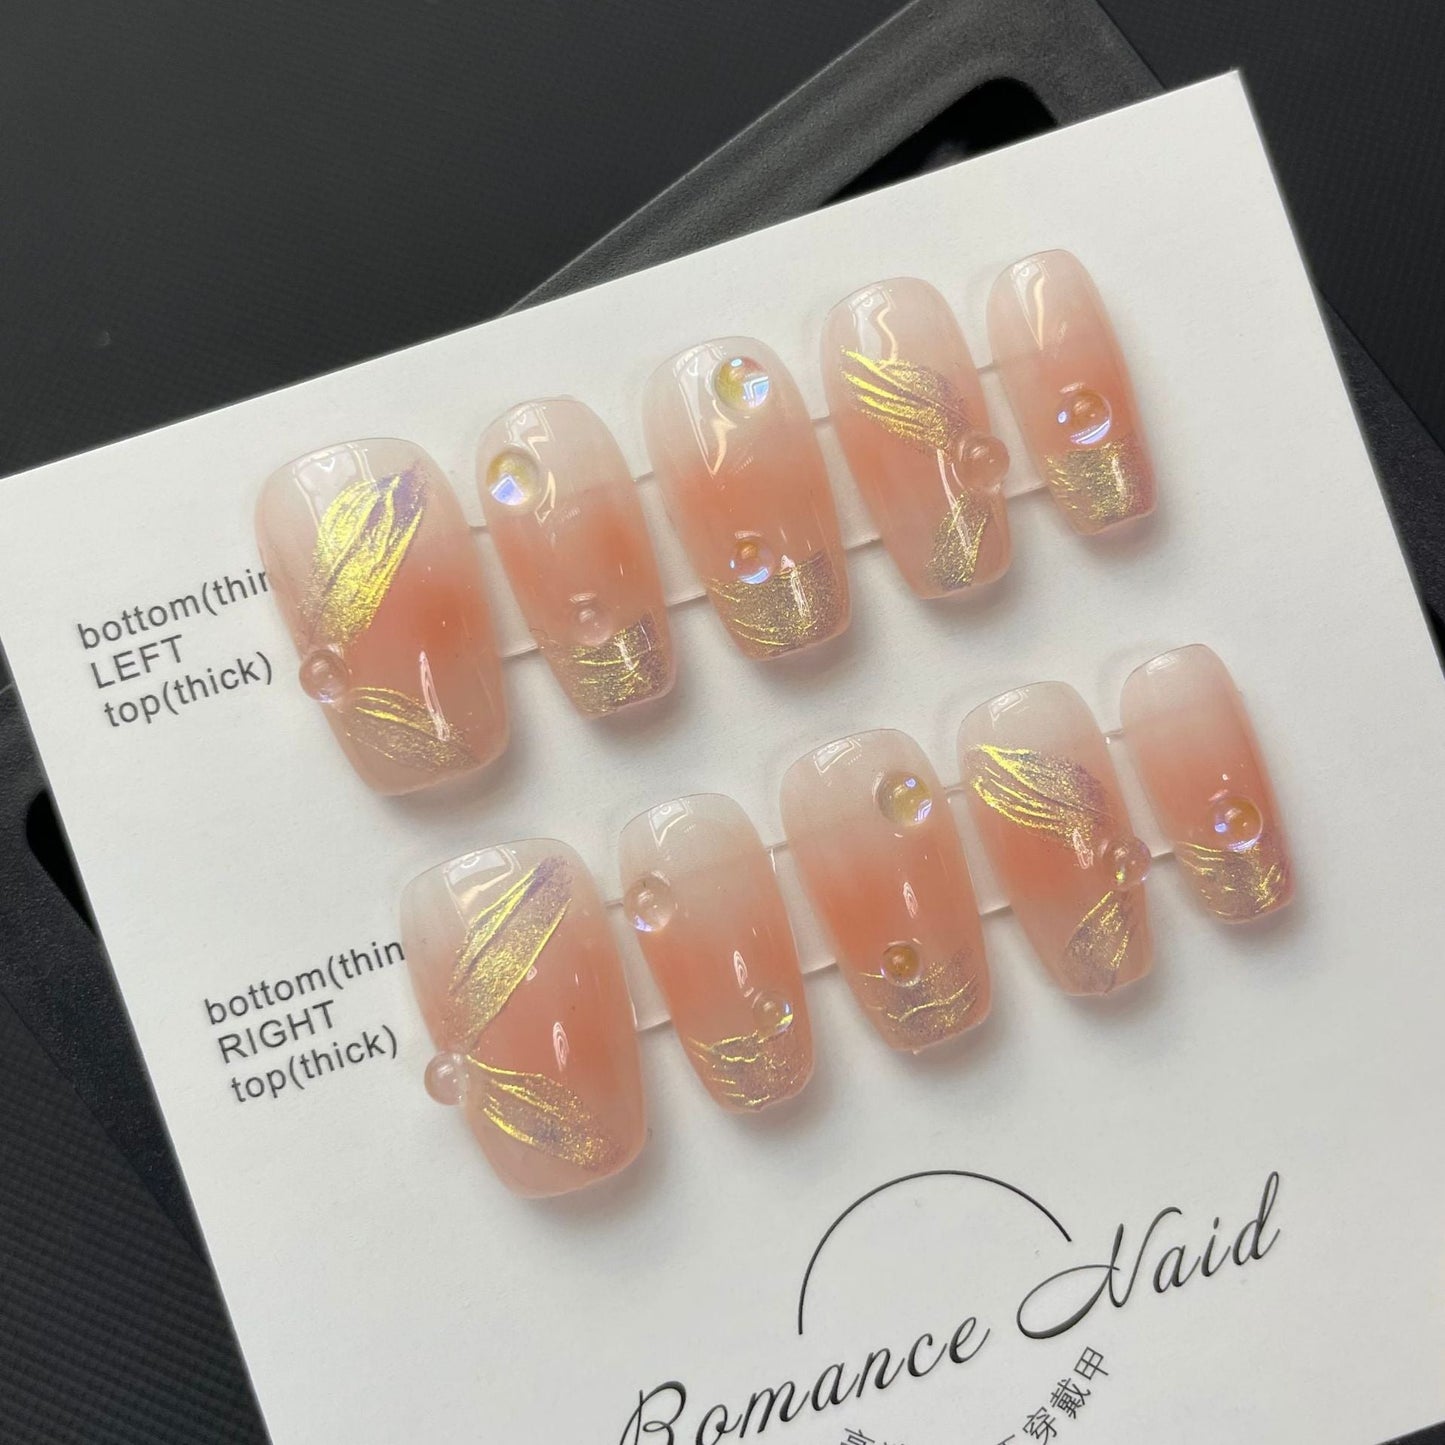 669 French ribbon style press on nails 100% handmade false nails pink